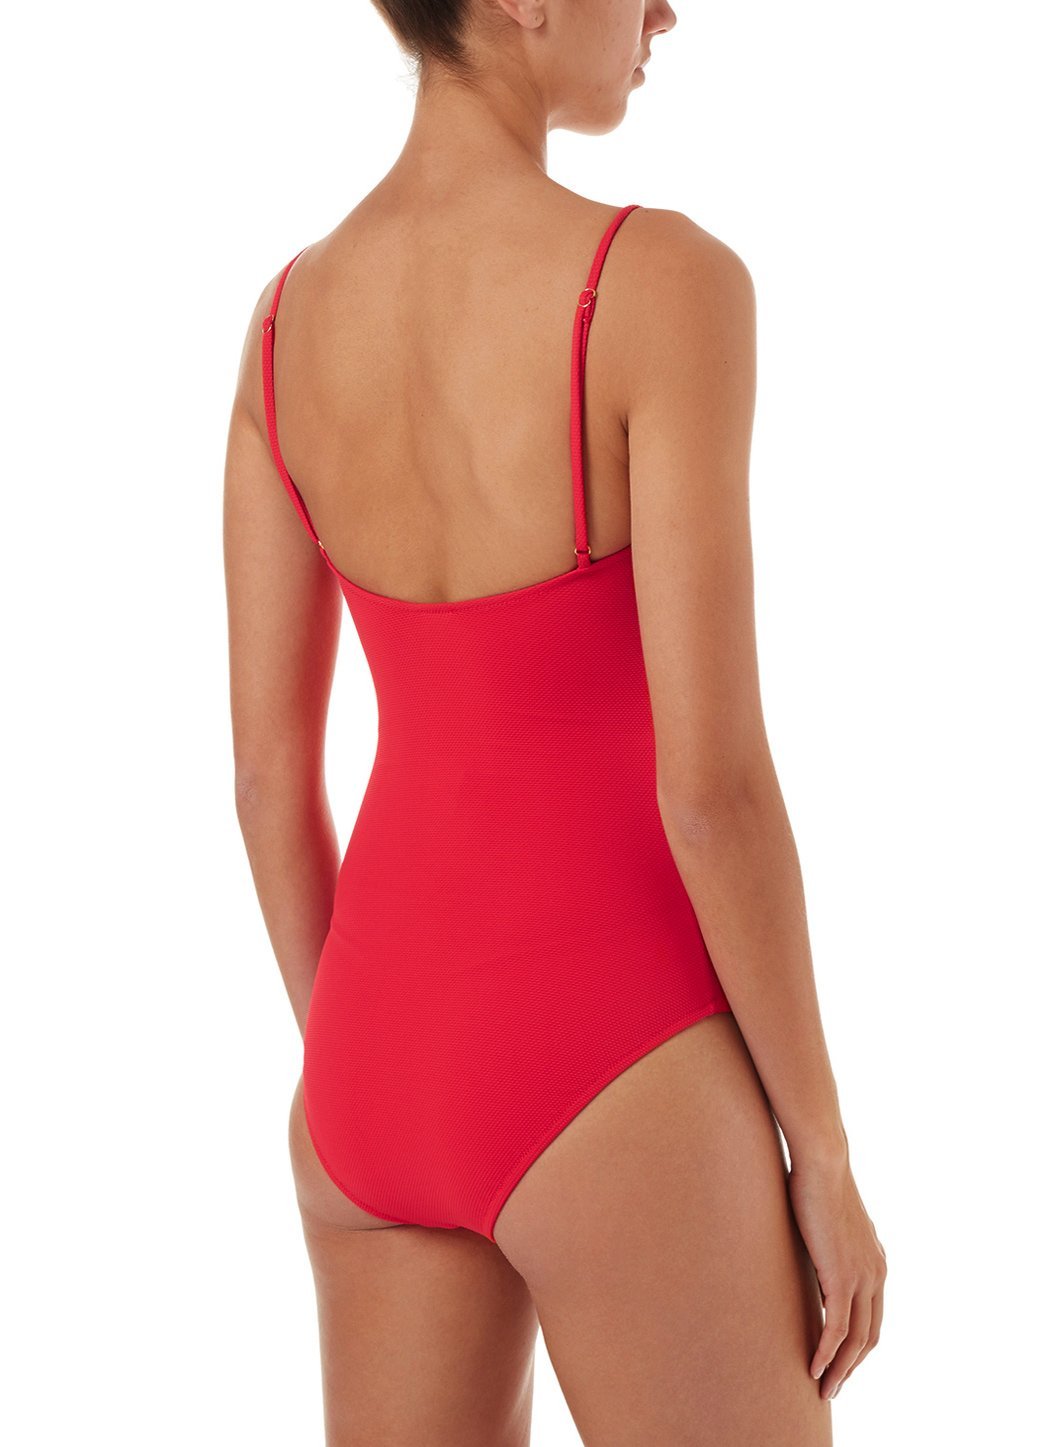 calabasas red pique overtheshoulder popper onepiece swimsuit 2019 B